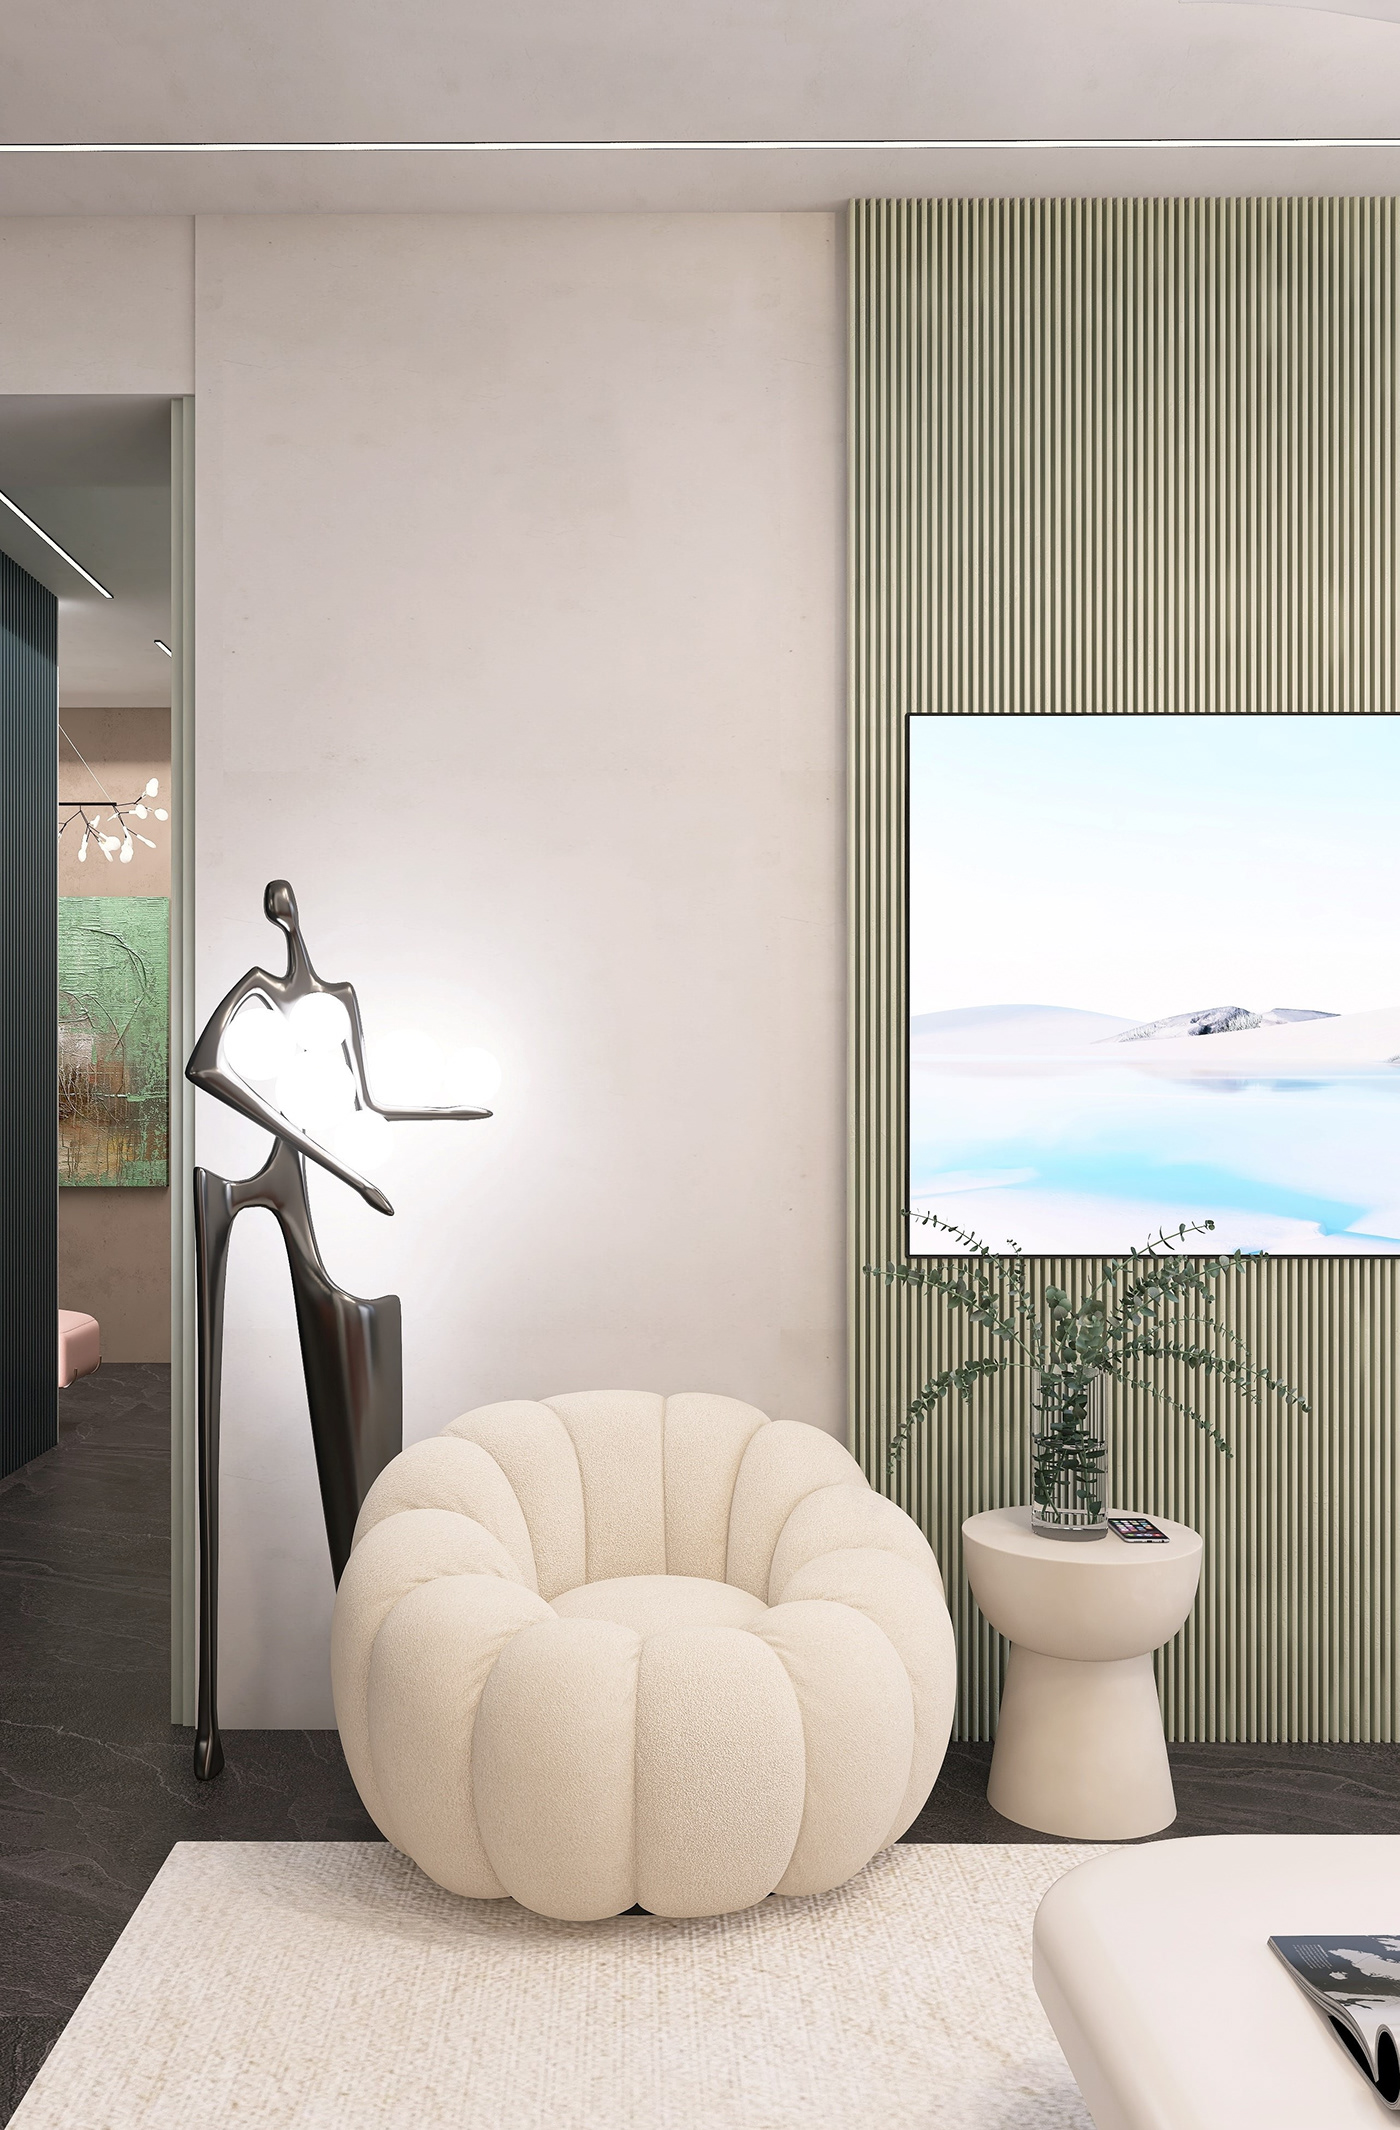 design designer living room kitchen modern visualization 3D swivel chair soho house